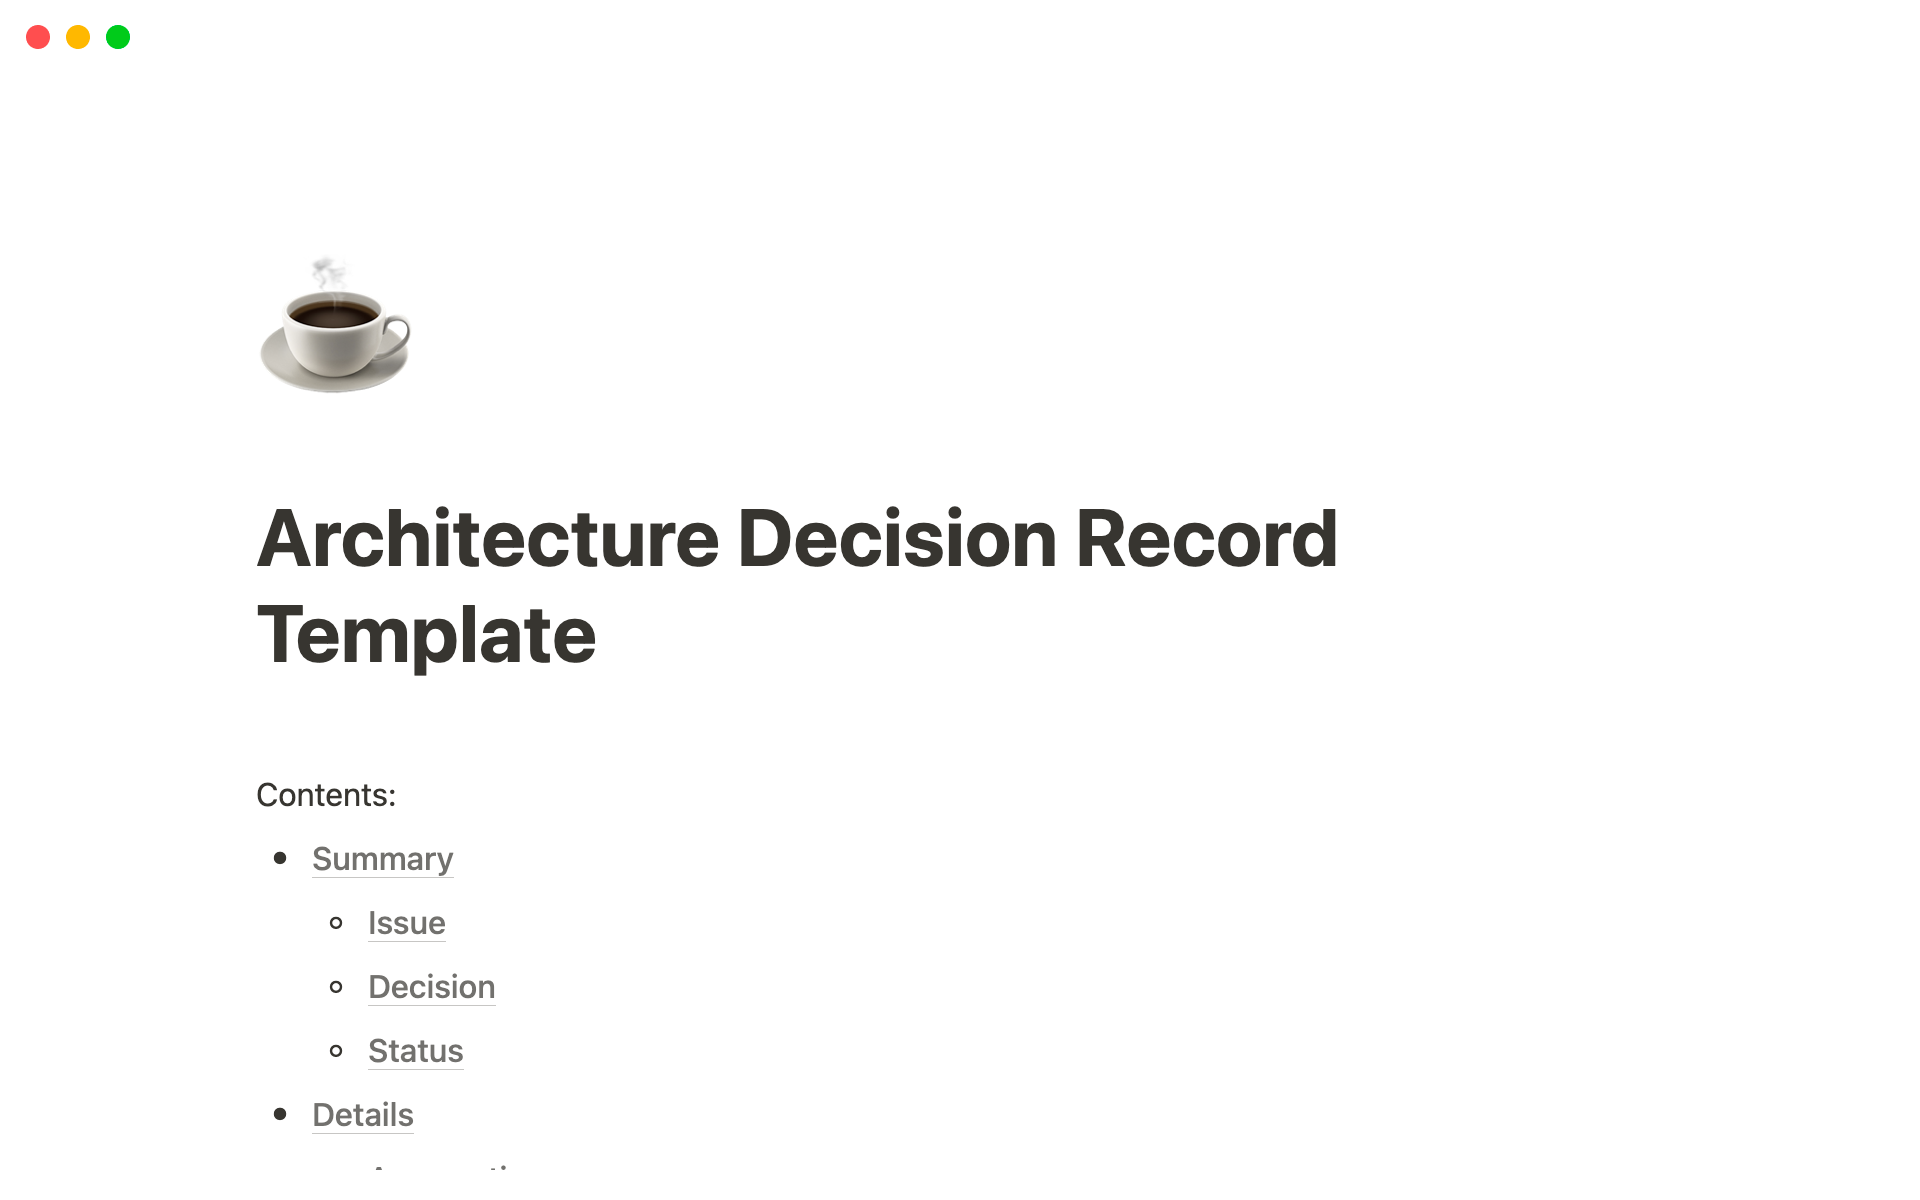 Vista previa de una plantilla para Architecture Decision Record Template